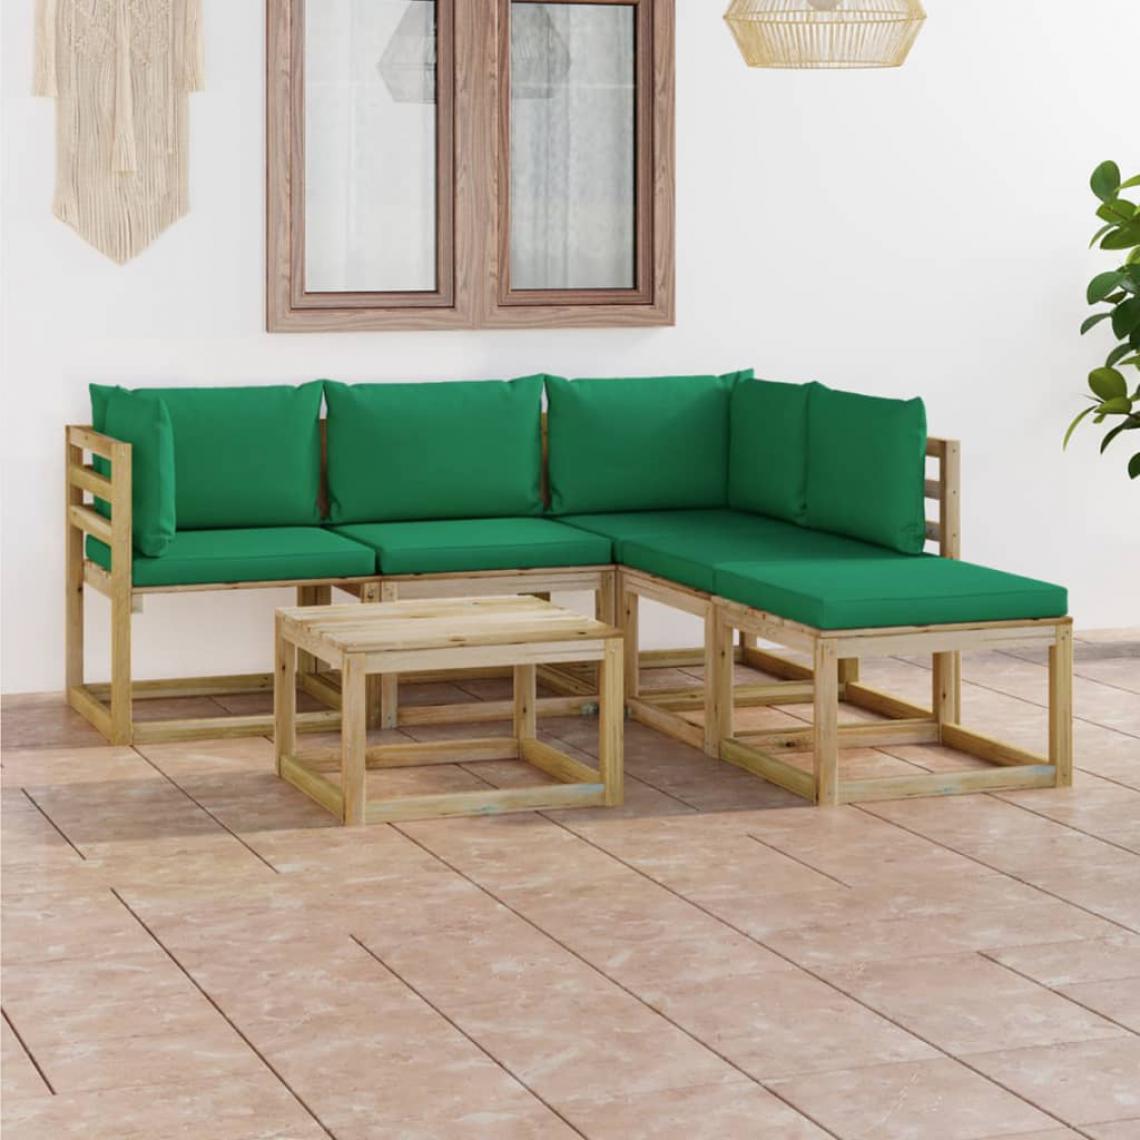 Chunhelife - Salon de jardin 6 pcs avec coussins vert - Ensembles canapés et fauteuils